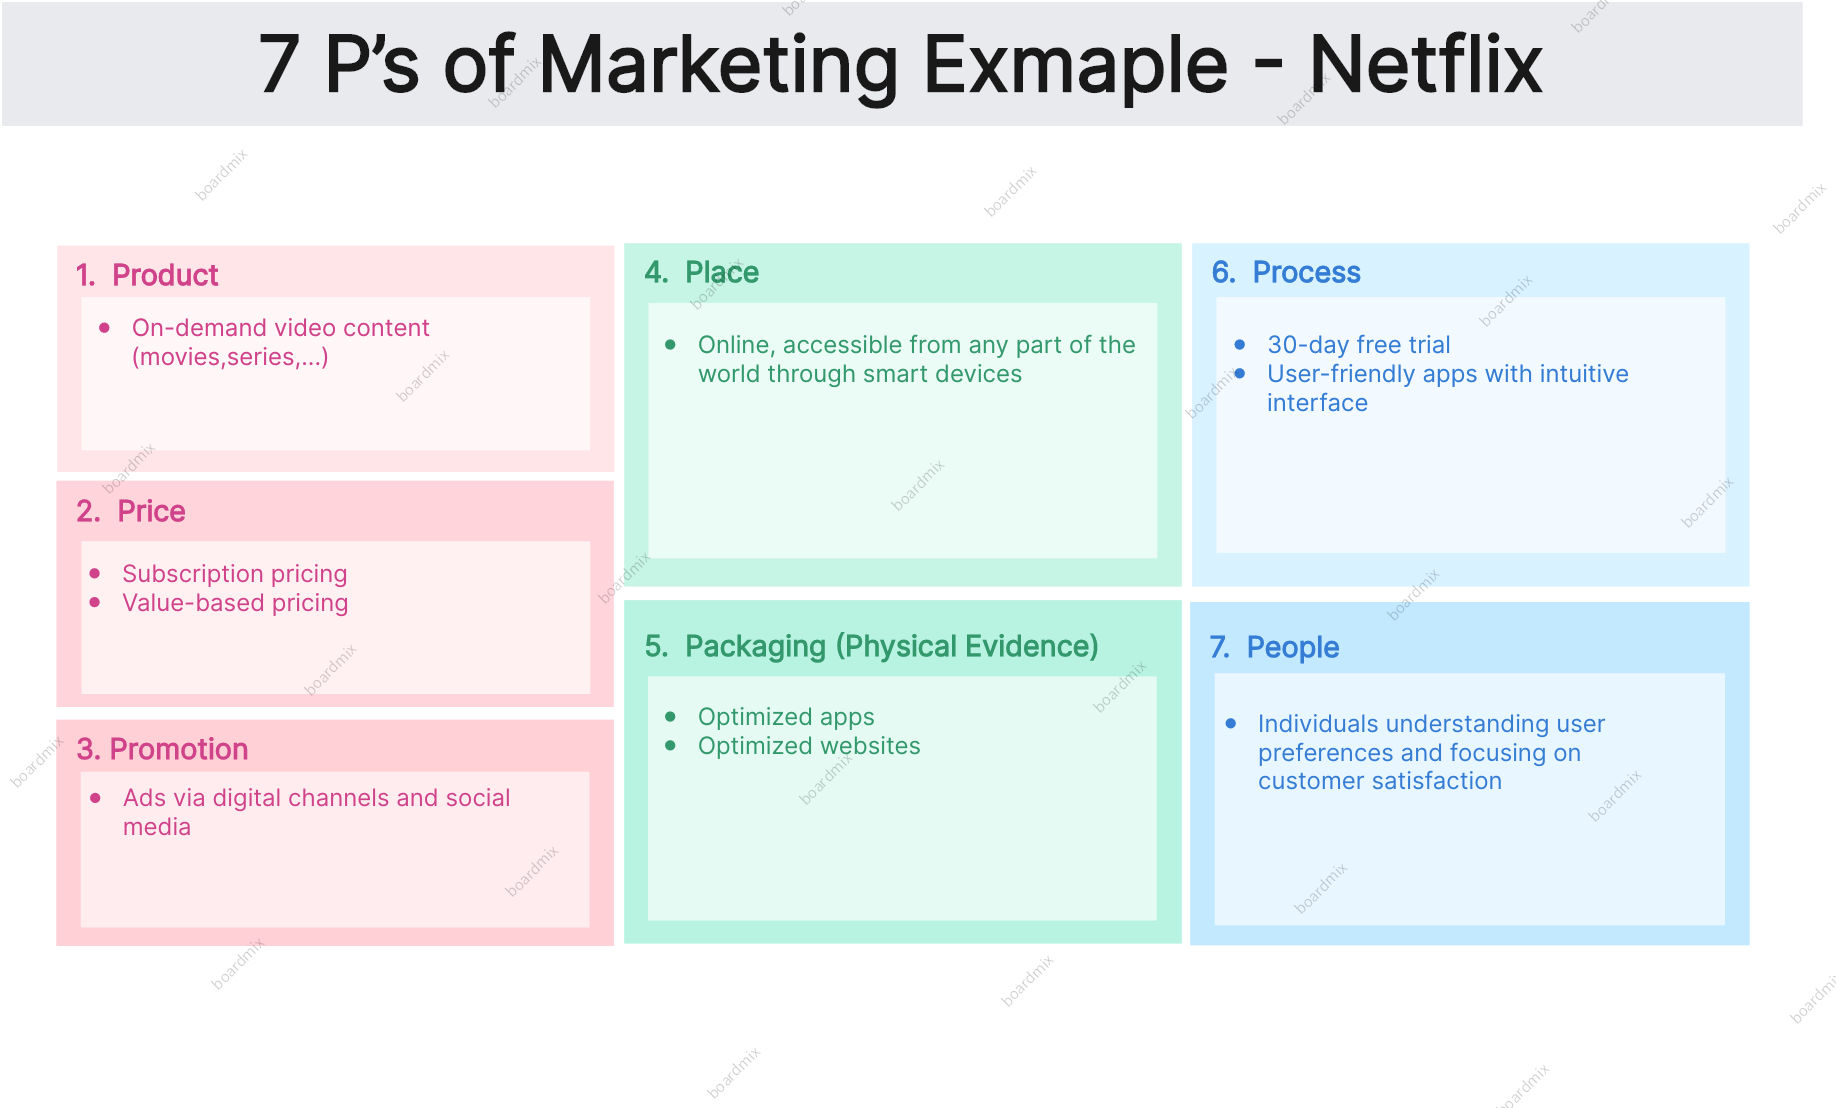 Cách Netflix áp dụng chiến lược 7P Marketing